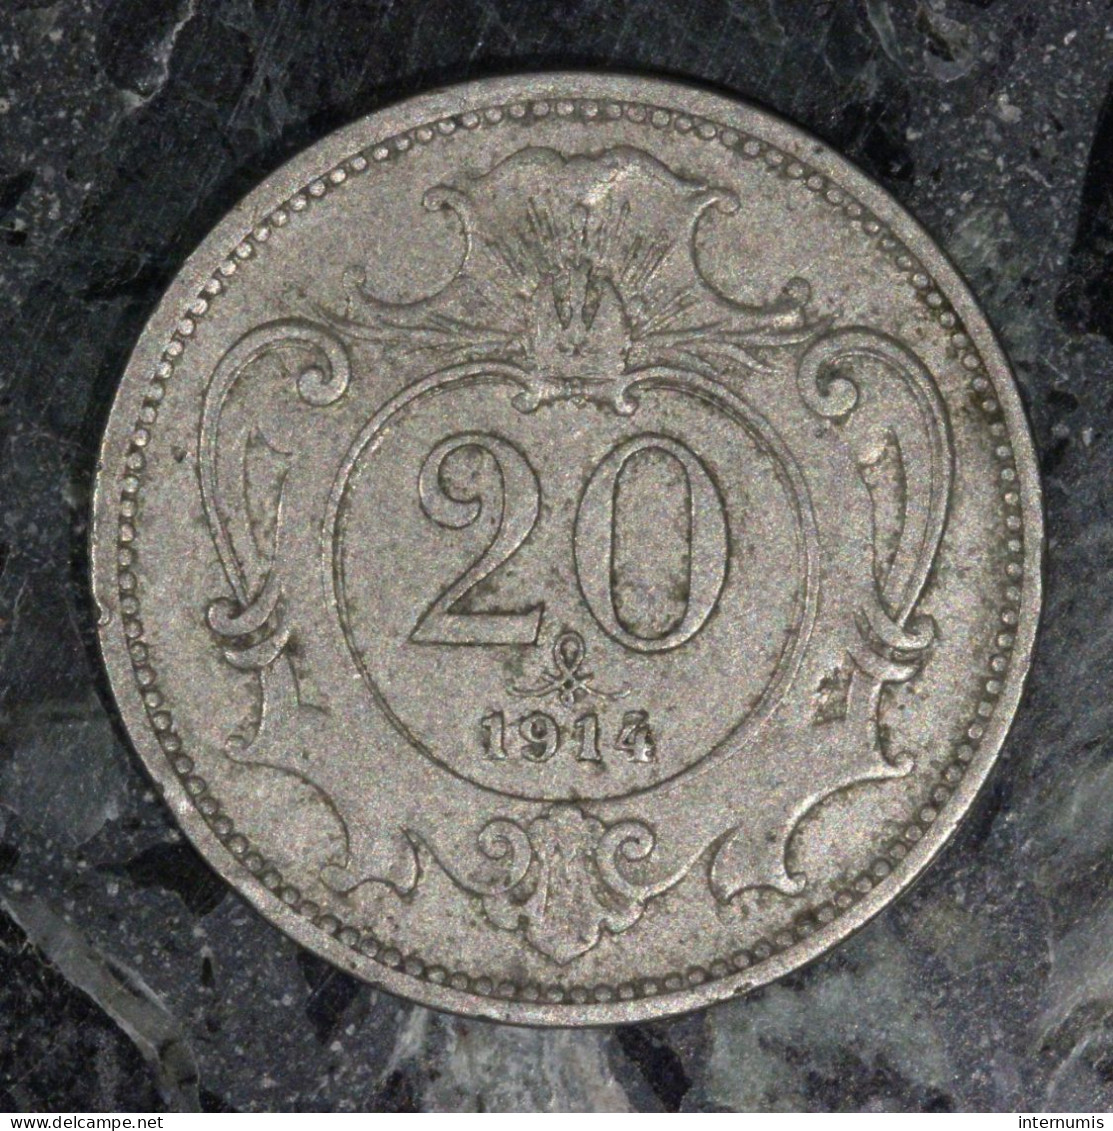  Autriche / Austria, , 20 Heller, 1914, , Nickel, SUP (AU),
KM#2803 - 2 Pfennig